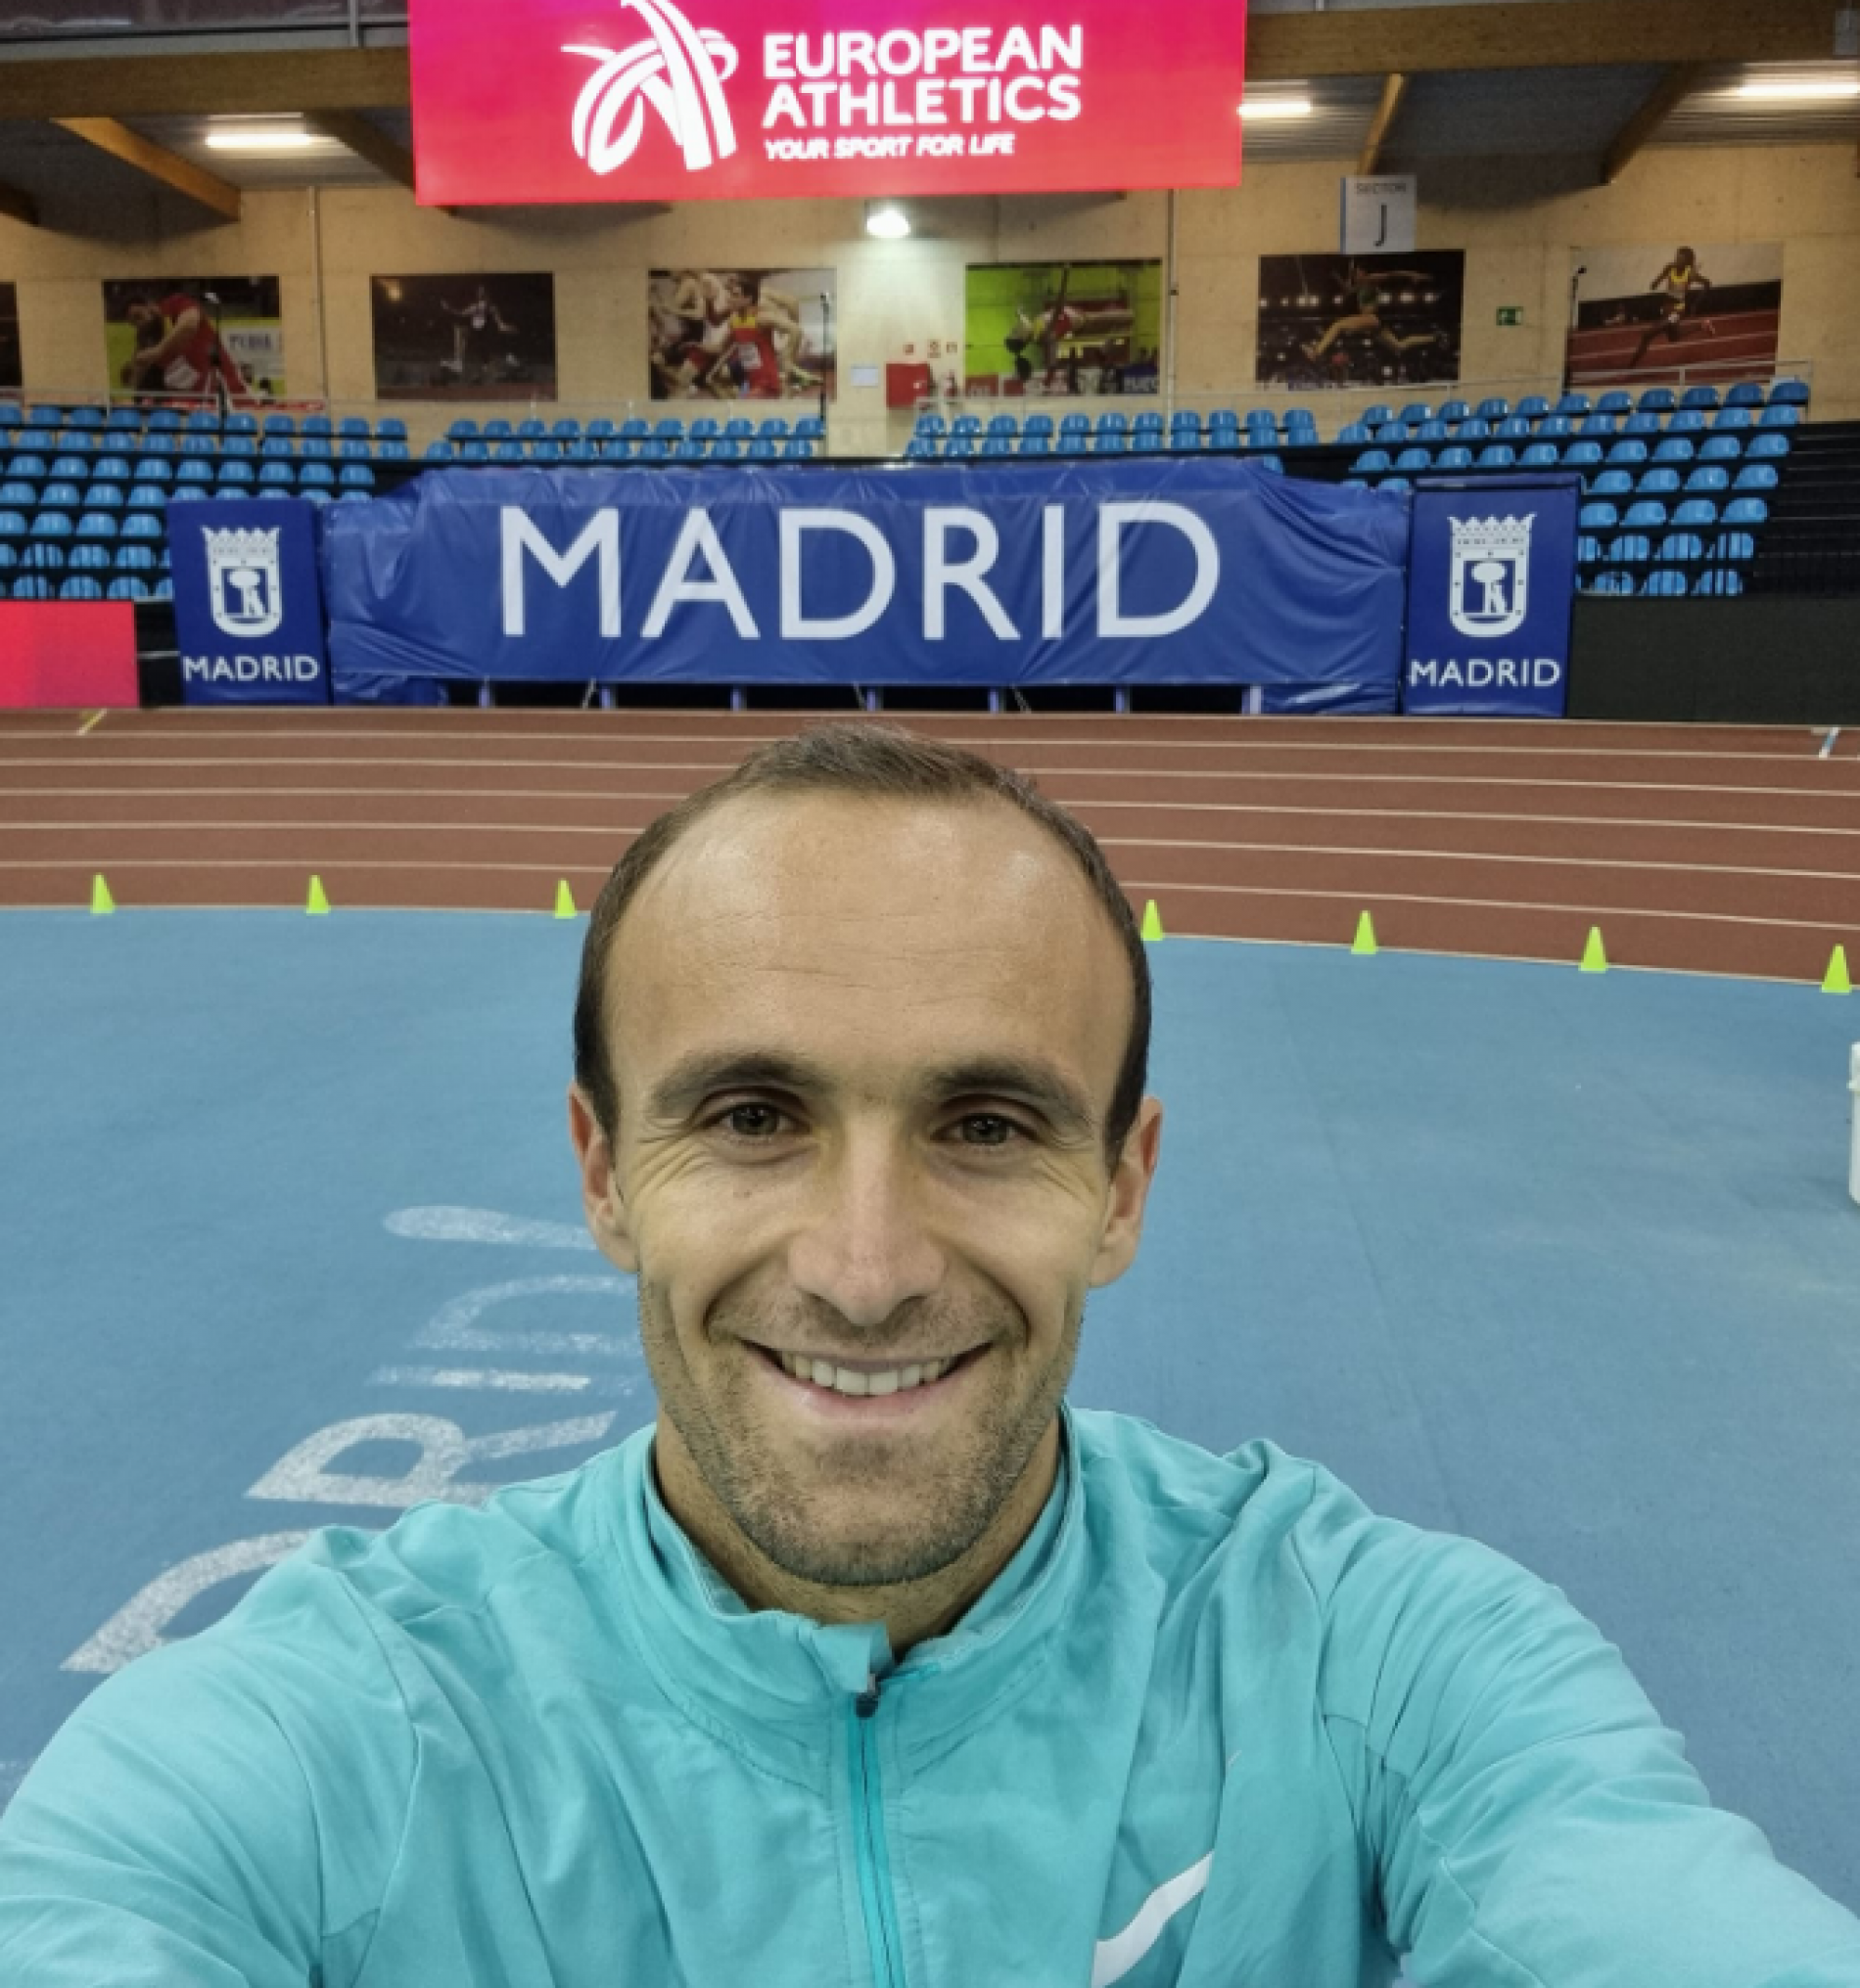 Amel Tuka s najboljim vremenom sezone osvojio 4. mjesto u trci na 800 metara na mitingu u Madridu